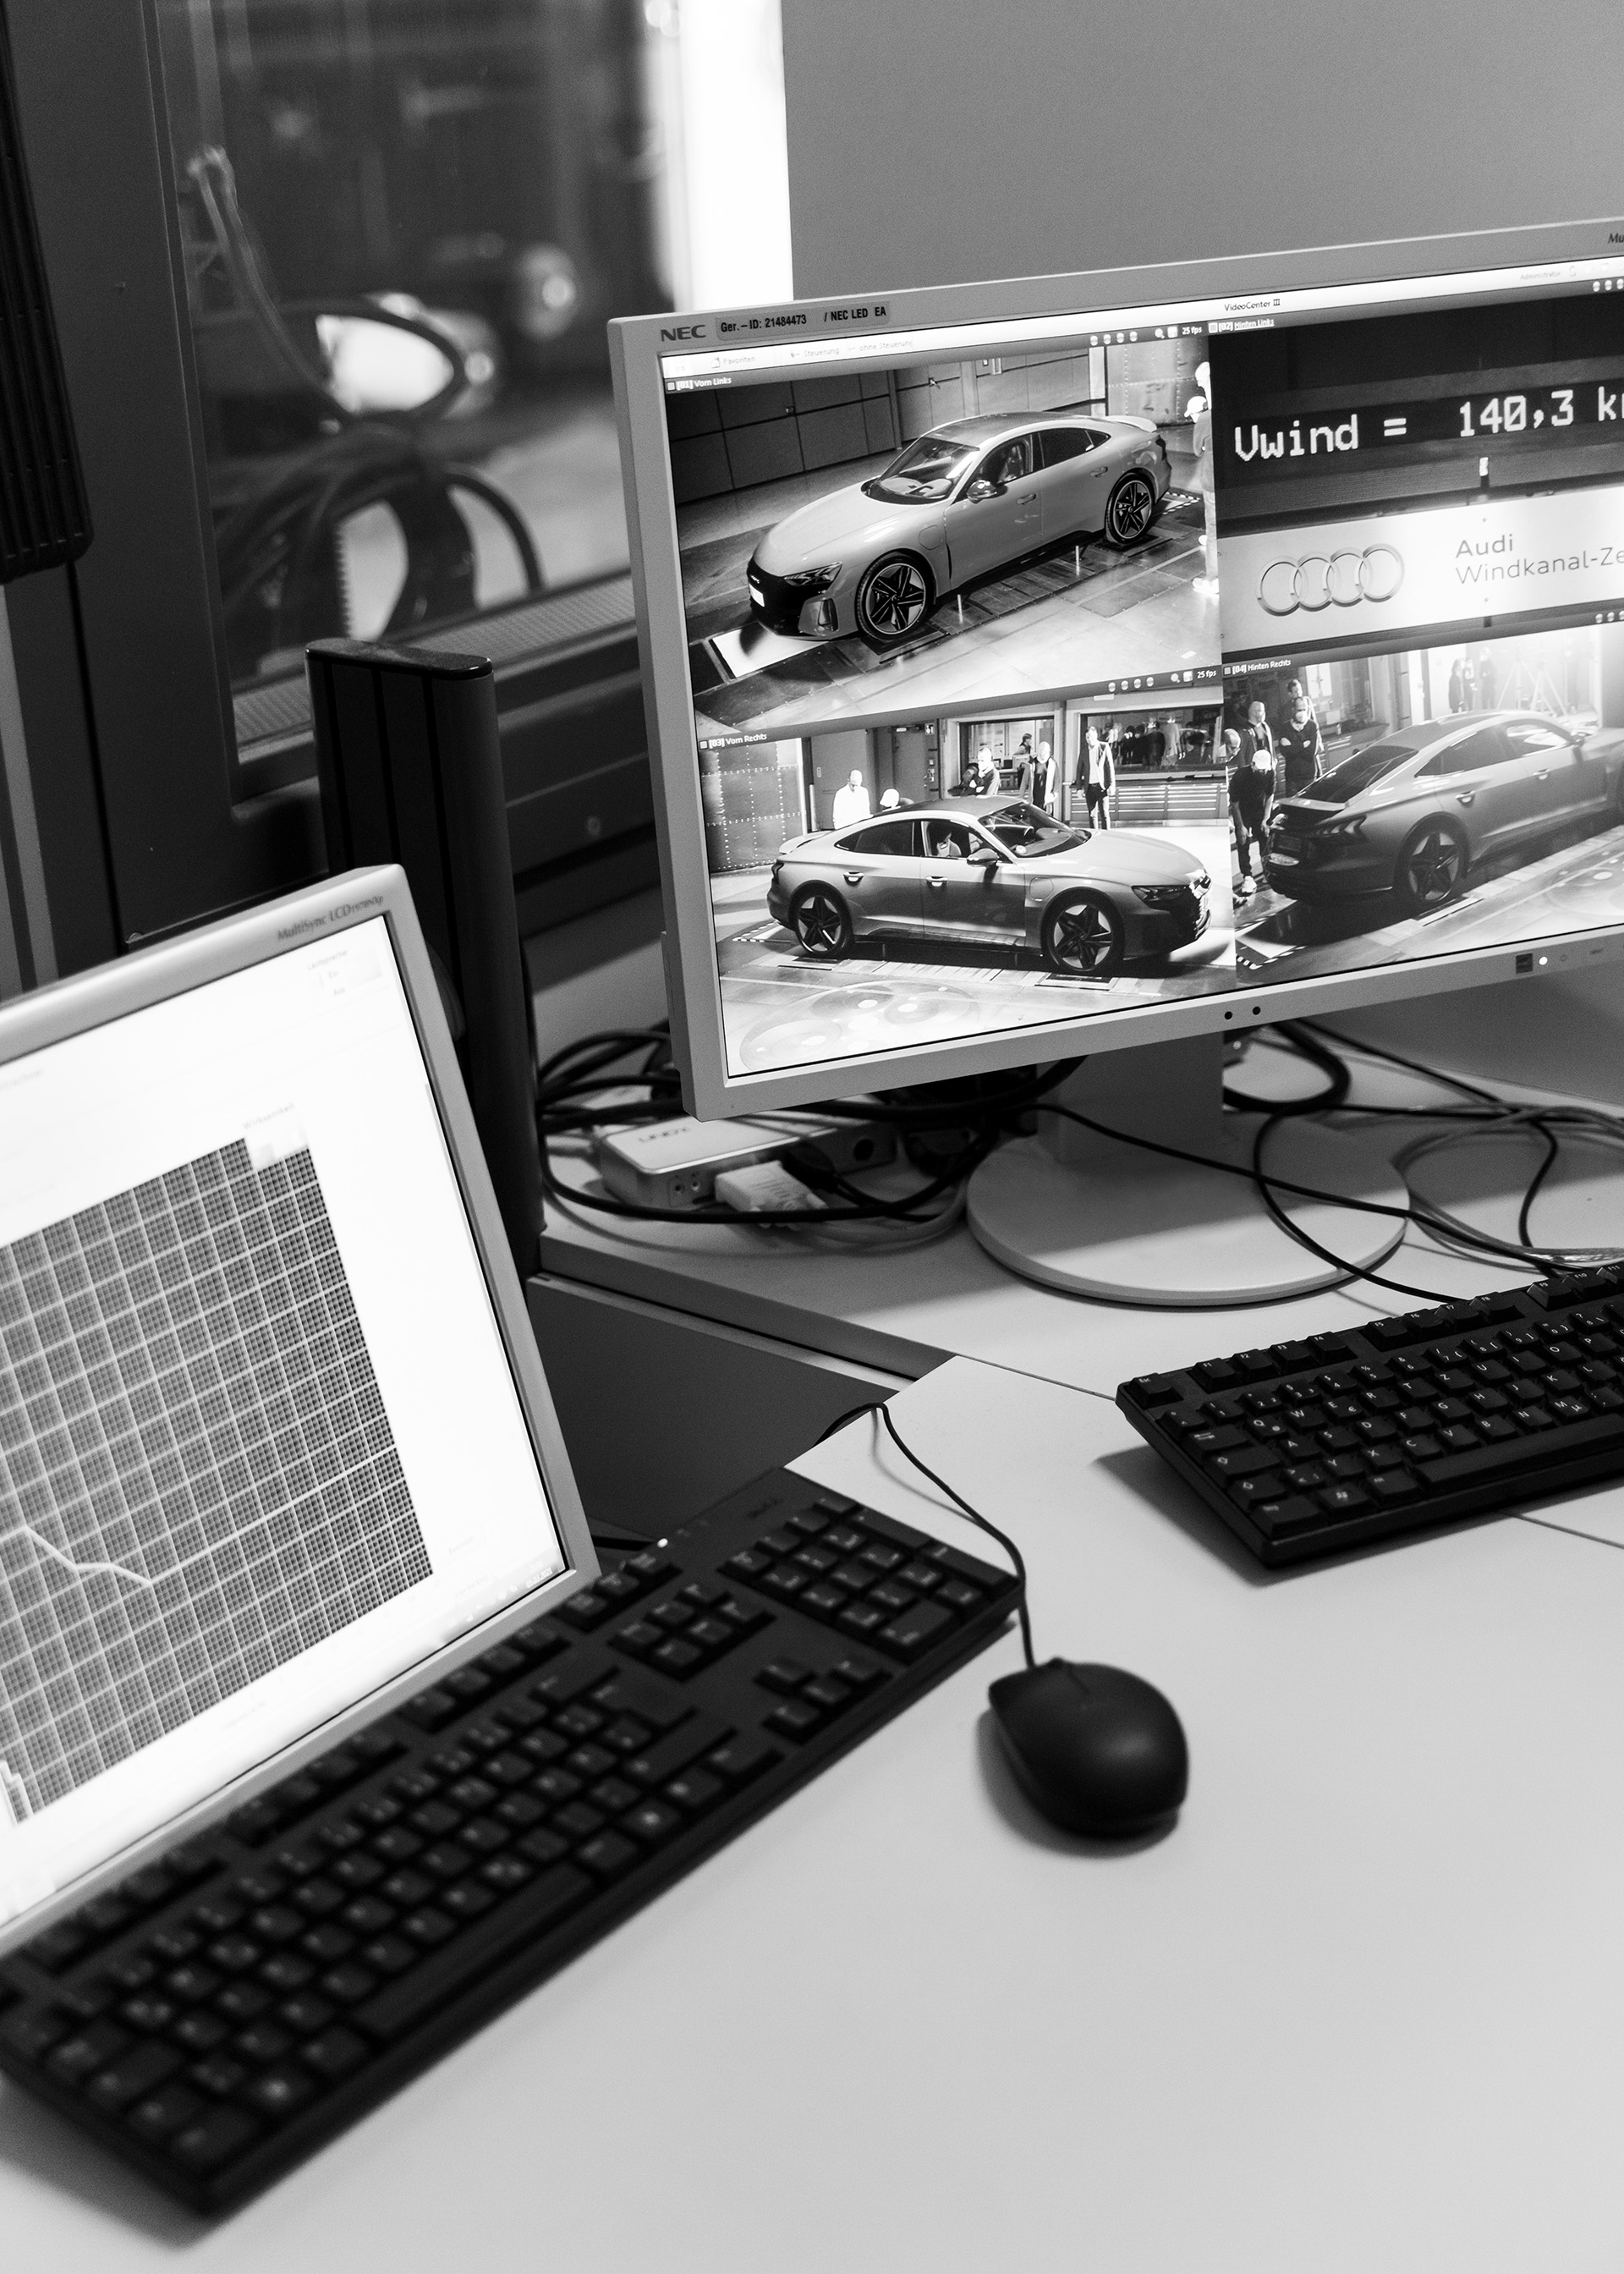 Gros plan de l’ordinateur et du poste de travail des spécialistes en aérodynamique chez Audi.